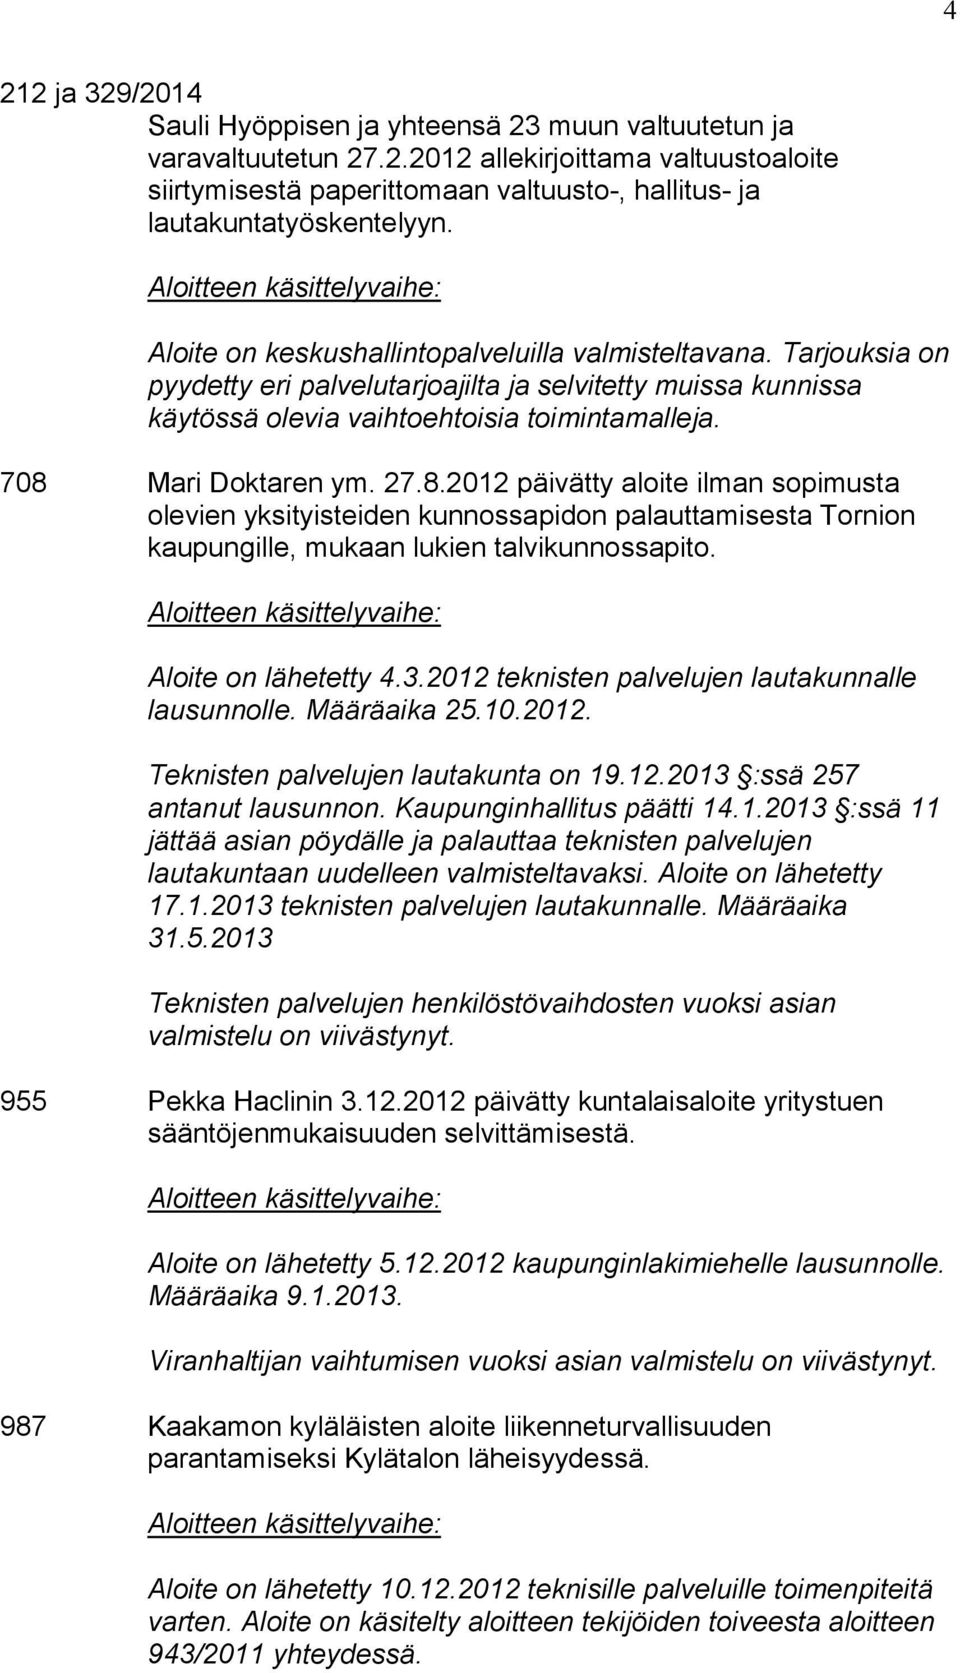 27.8.2012 päivätty aloite ilman sopimusta olevien yksityisteiden kunnossapidon palauttamisesta Tornion kaupungille, mukaan lukien talvikunnossapito. Aloite on lähetetty 4.3.